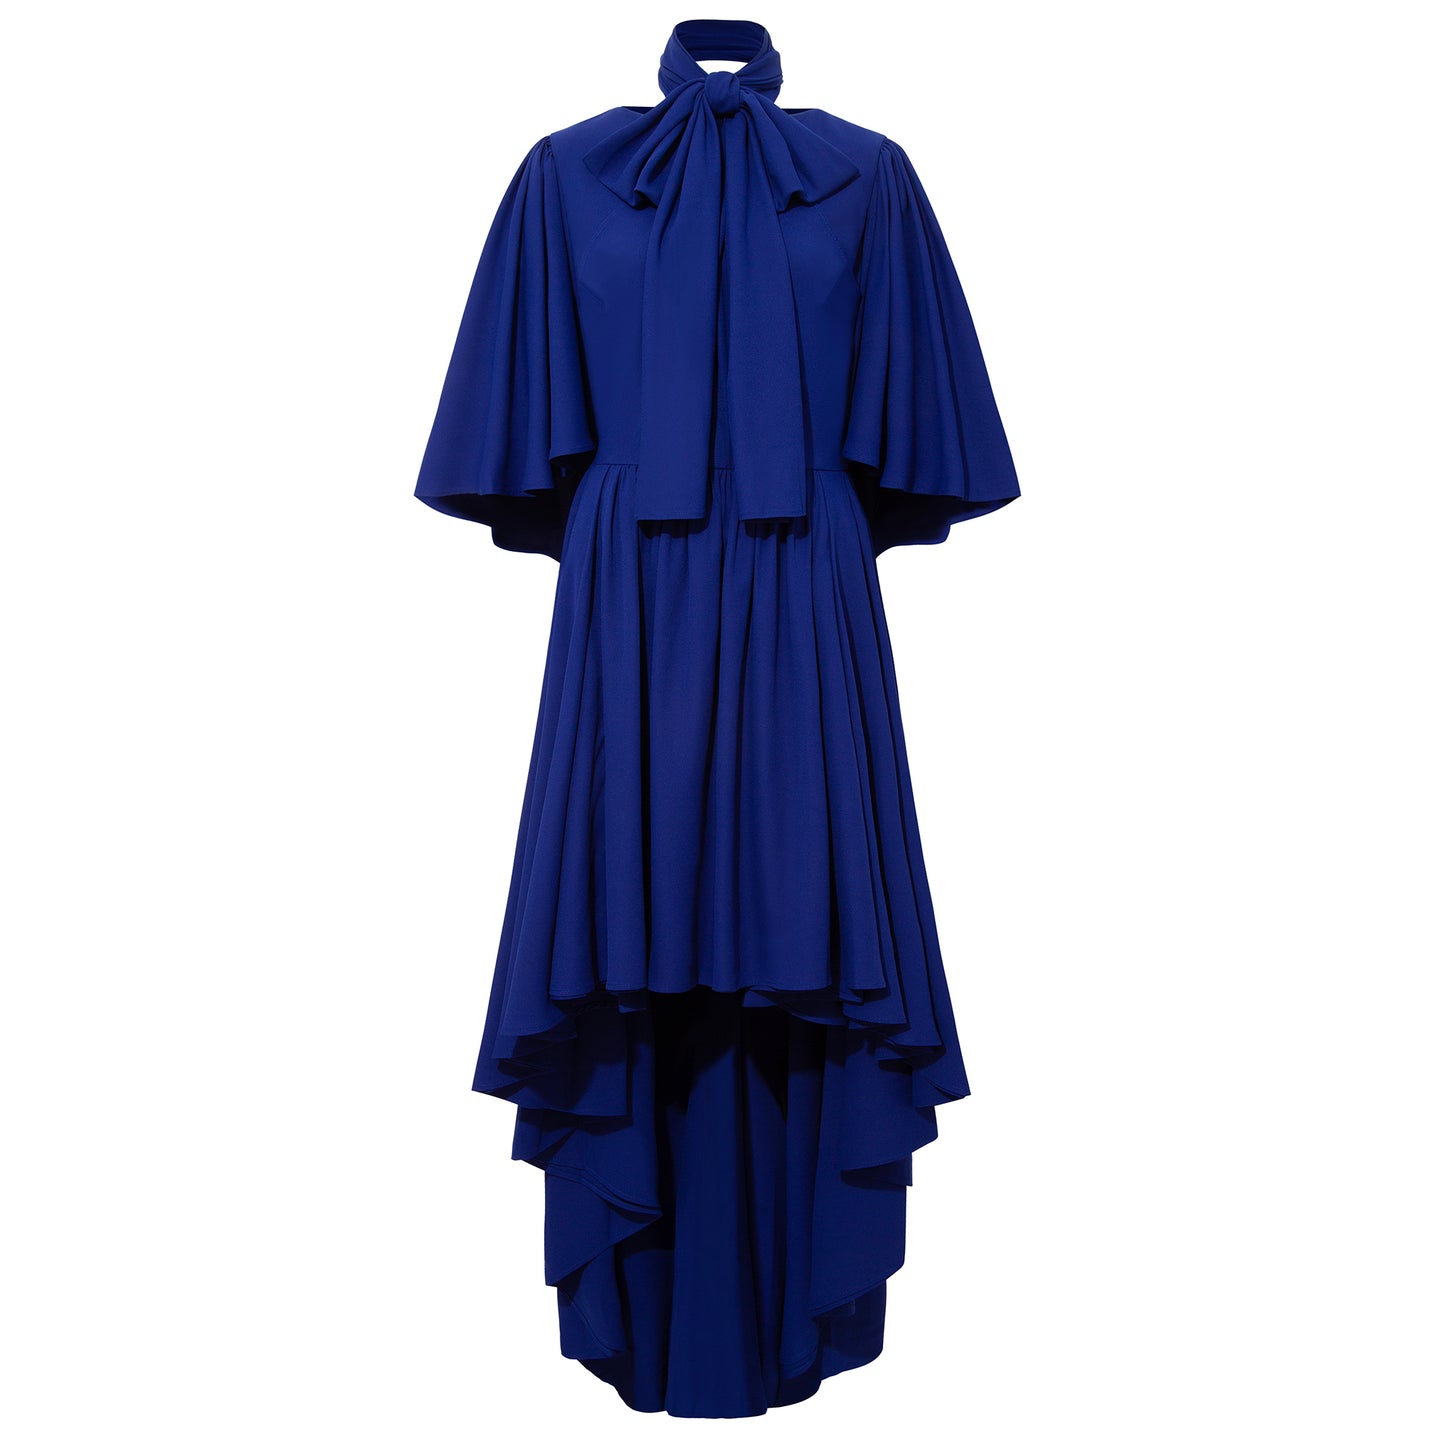 Femponiq Bow Tie Blue Maxi Dress Front